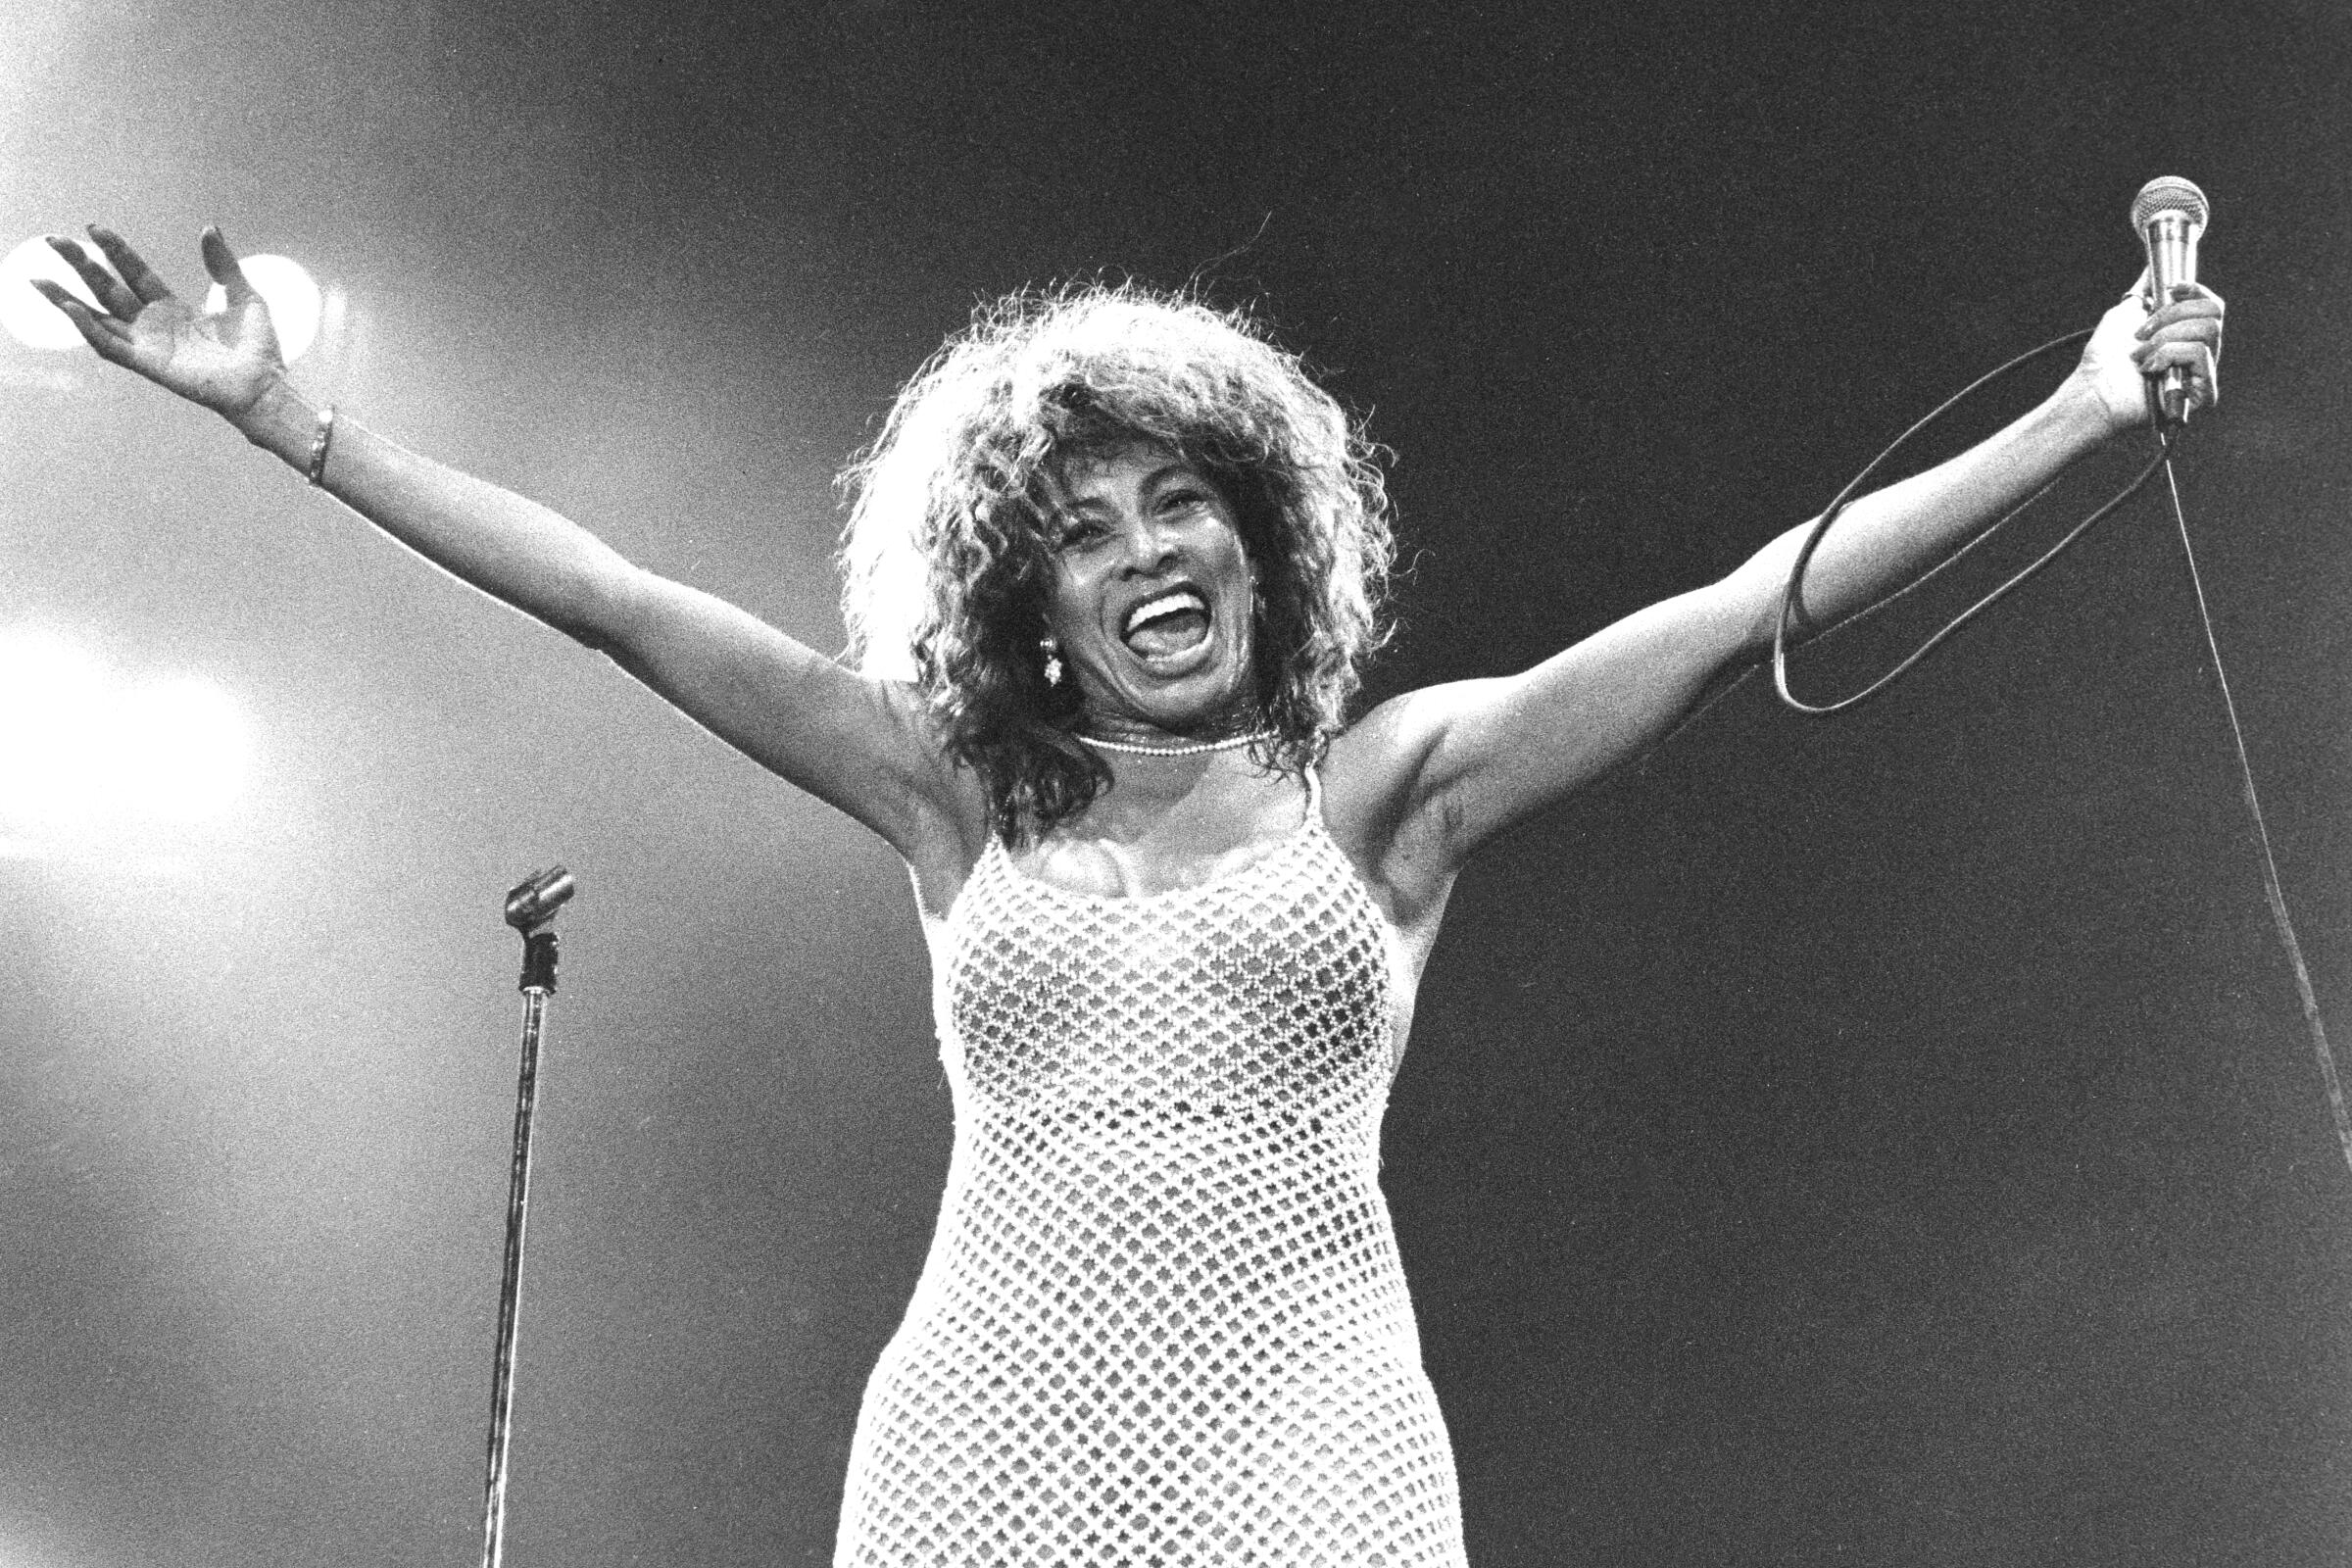 Tina Turner on stage.